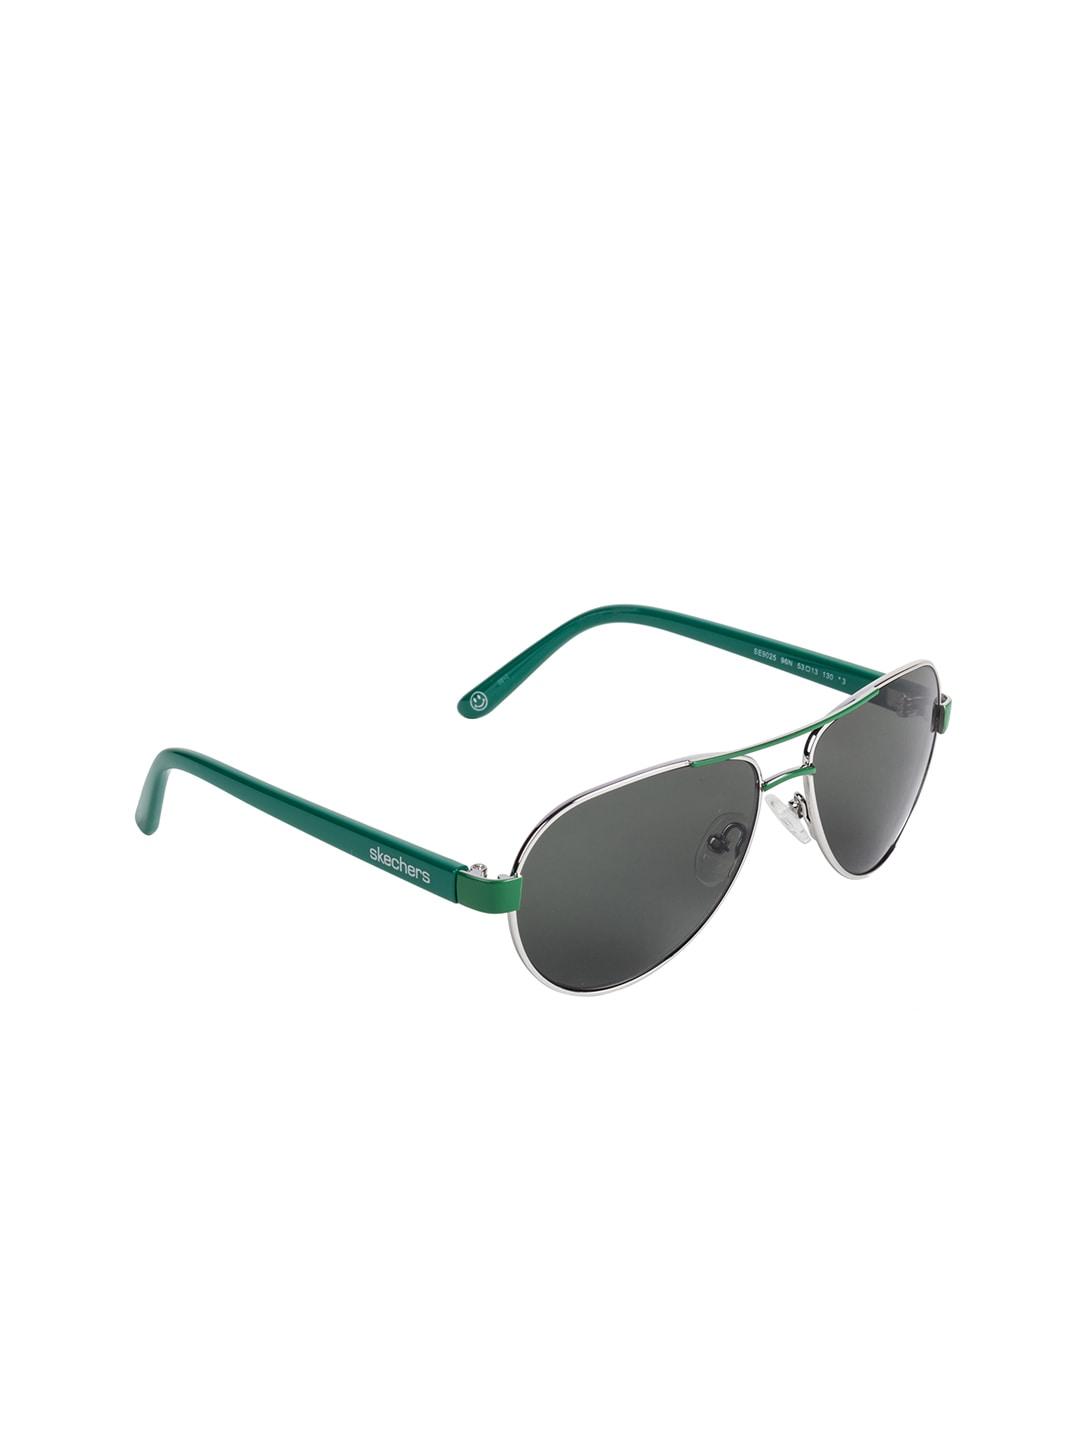 skechers-men-aviator-sunglasses-se9025-53-96n